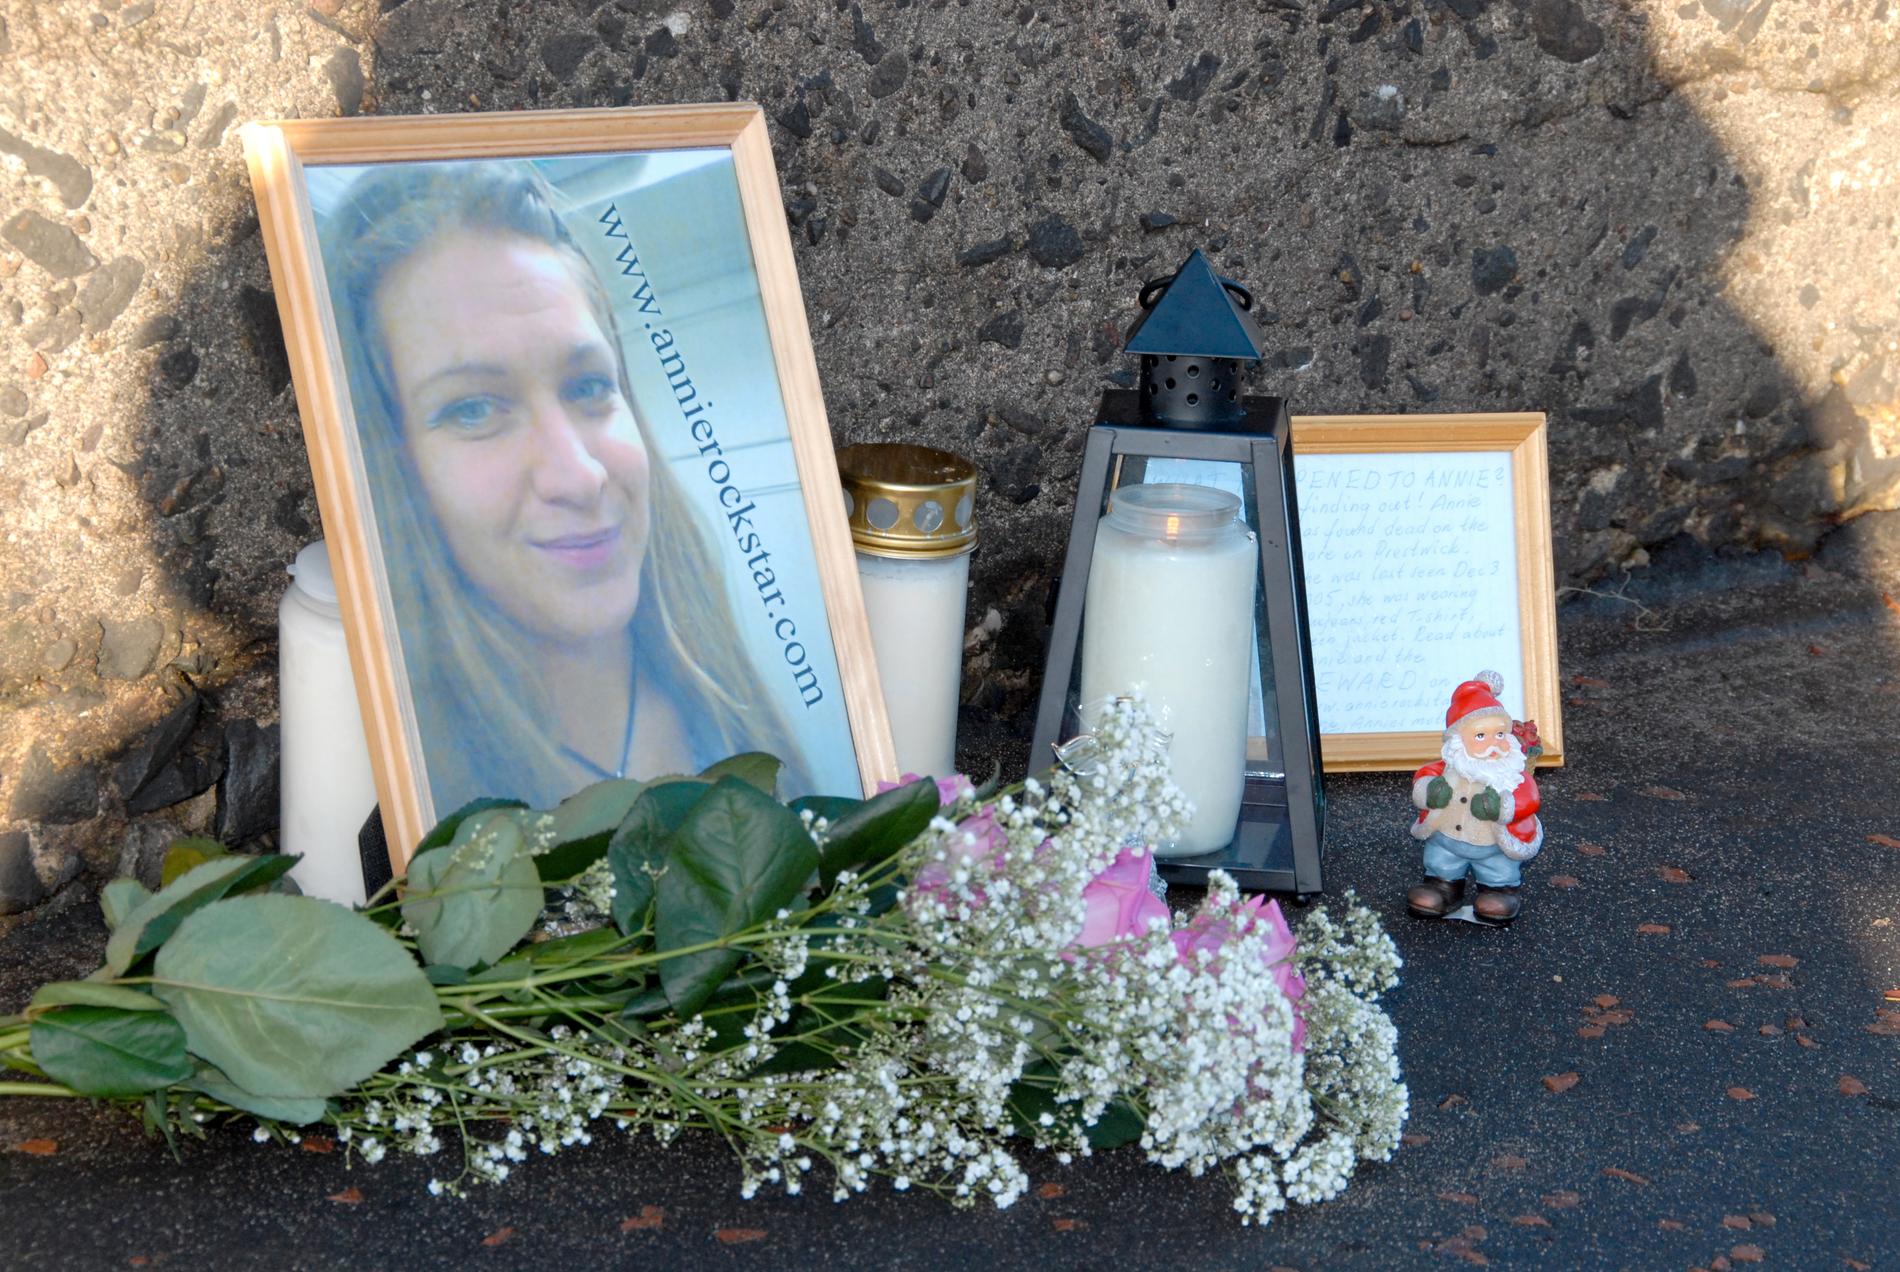  Den 4 december 2005 hittades 30-åriga Annie Börjesson från Södertälje död på stranden i Prestwick i Skottland. 